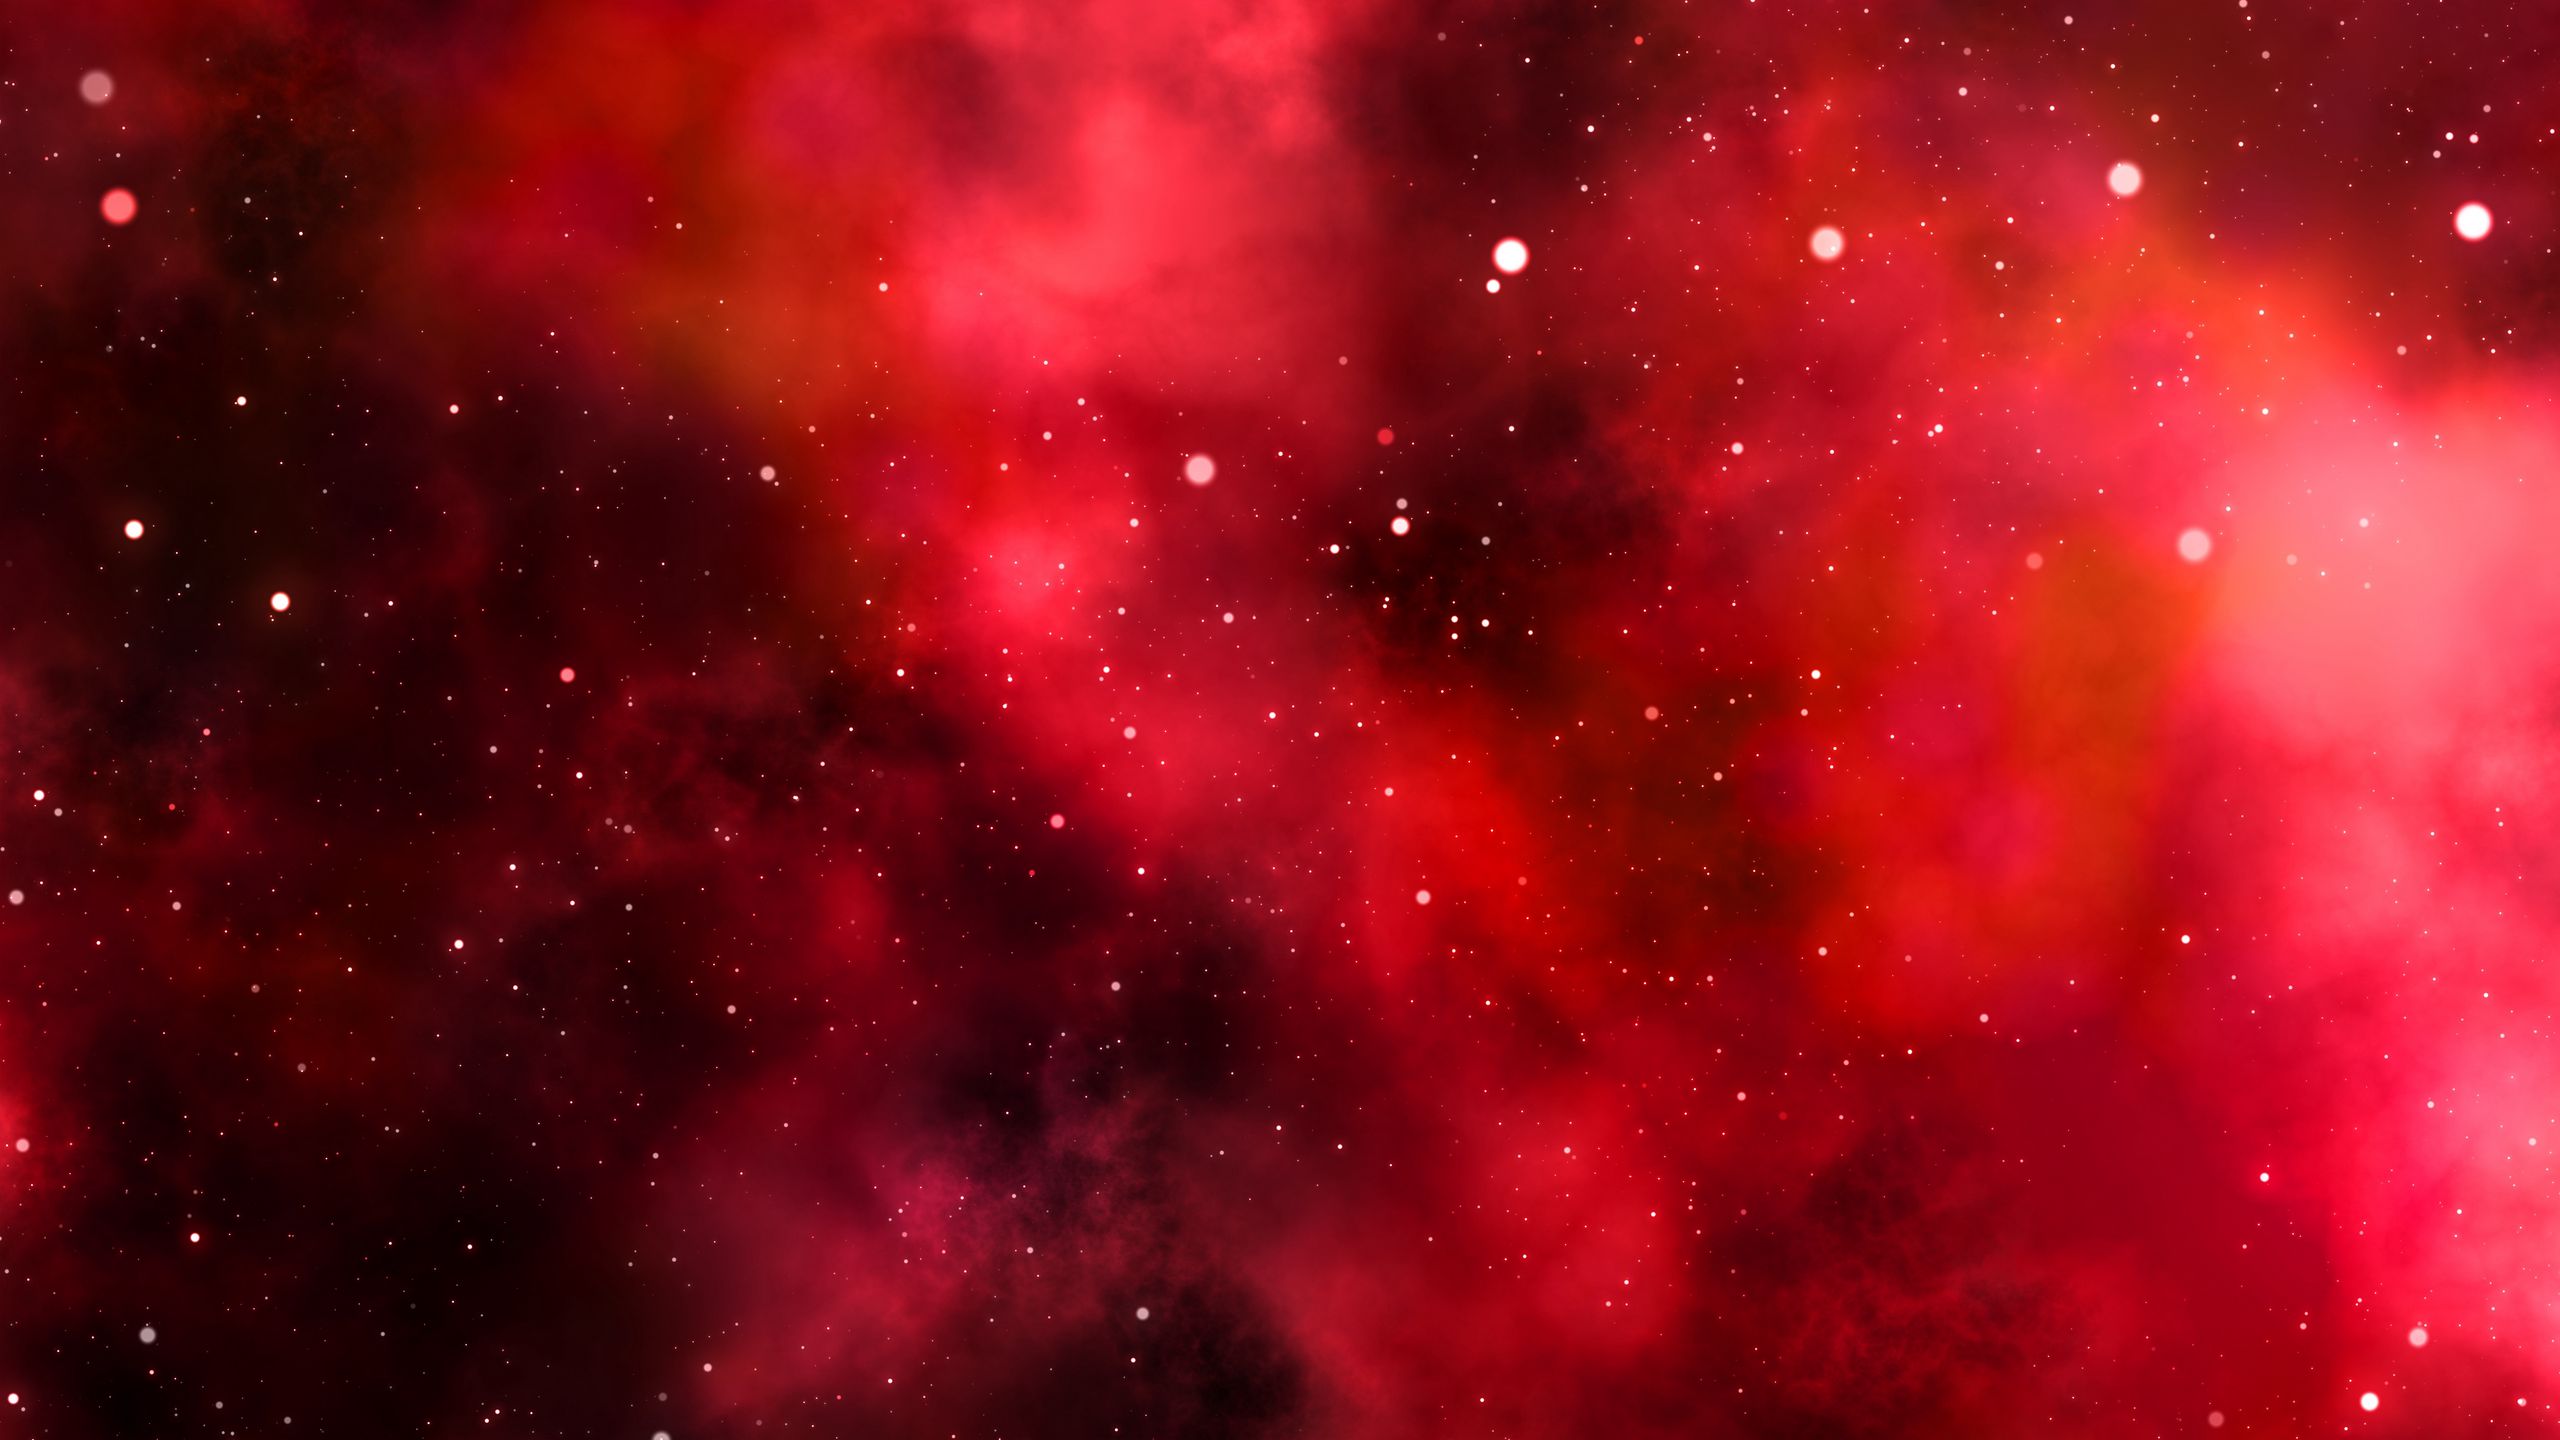 Hình nền vũ trụ đỏ và sáng chói: Hình nền vũ trụ đỏ và sáng chói sẽ khiến bạn vô cùng thích thú. Với màu sắc rực rỡ và sự mê hoặc của vũ trụ, hình nền này sẽ giúp bạn tận hưởng vẻ đẹp đầy kì diệu của không gian.